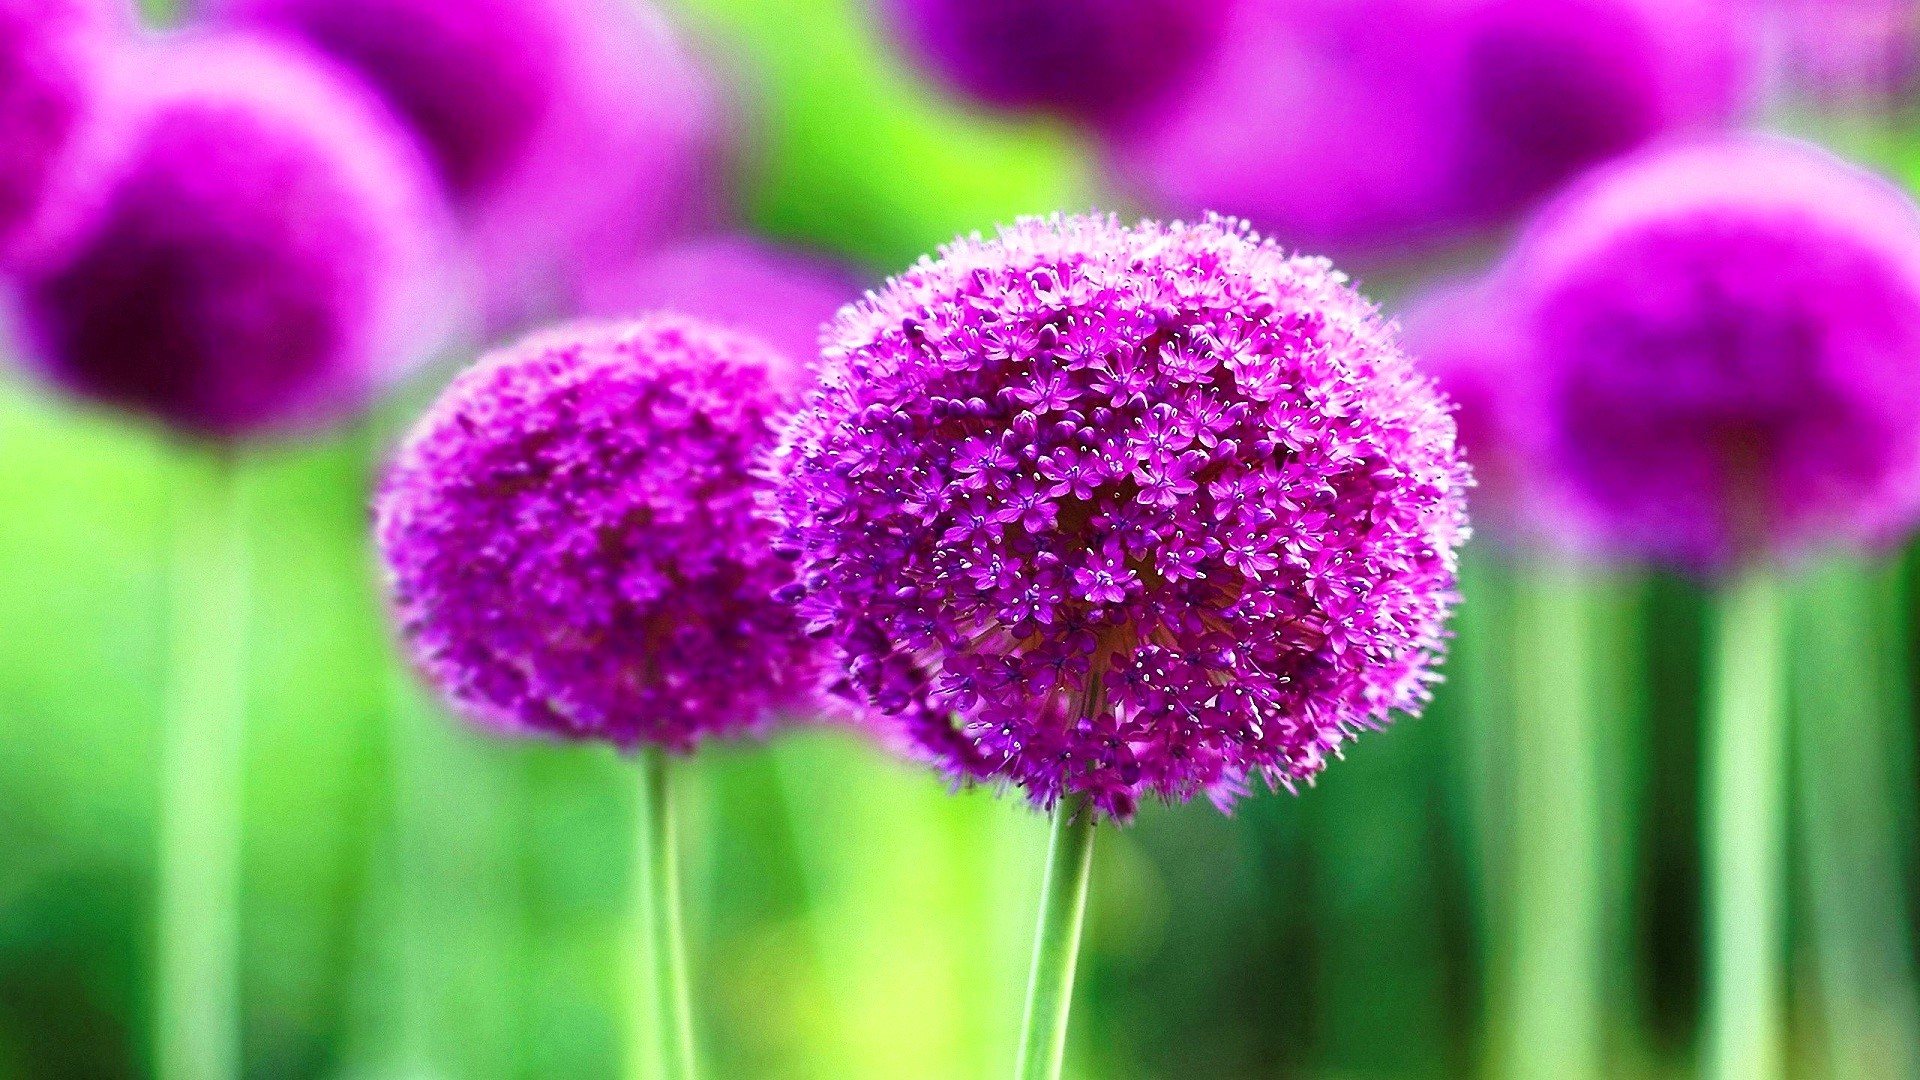 1920x1080 ... Cute Purple Flower #6910785 ...